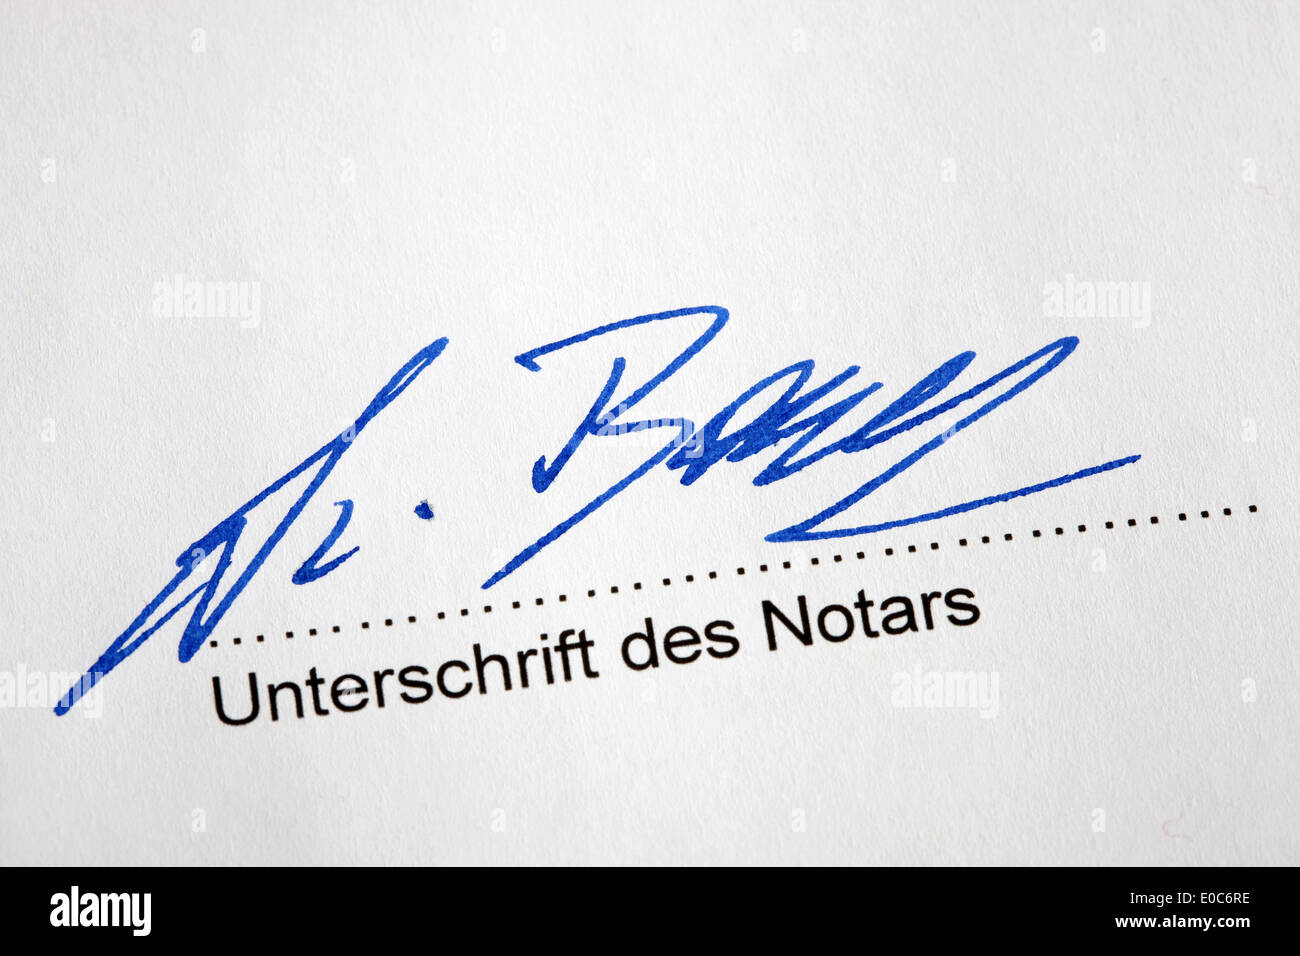 La firma del notario público en virtud de un acuerdo notarial, Unterschrift des Notars unter eine notarielle Vereinbarung Foto de stock